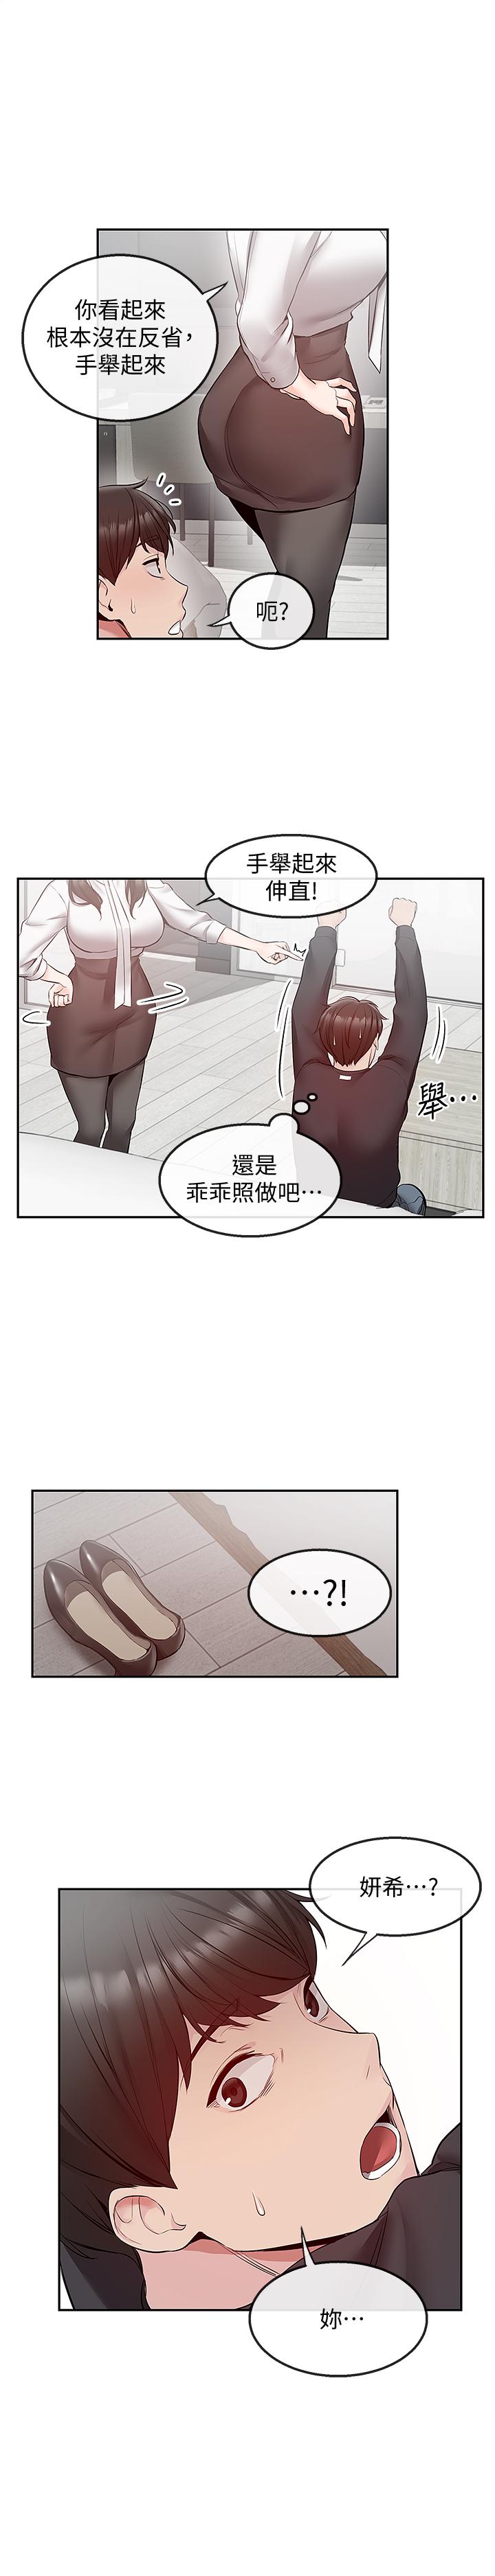 《深夜噪音》漫画 第29话 - 妍希这次真的生气了?